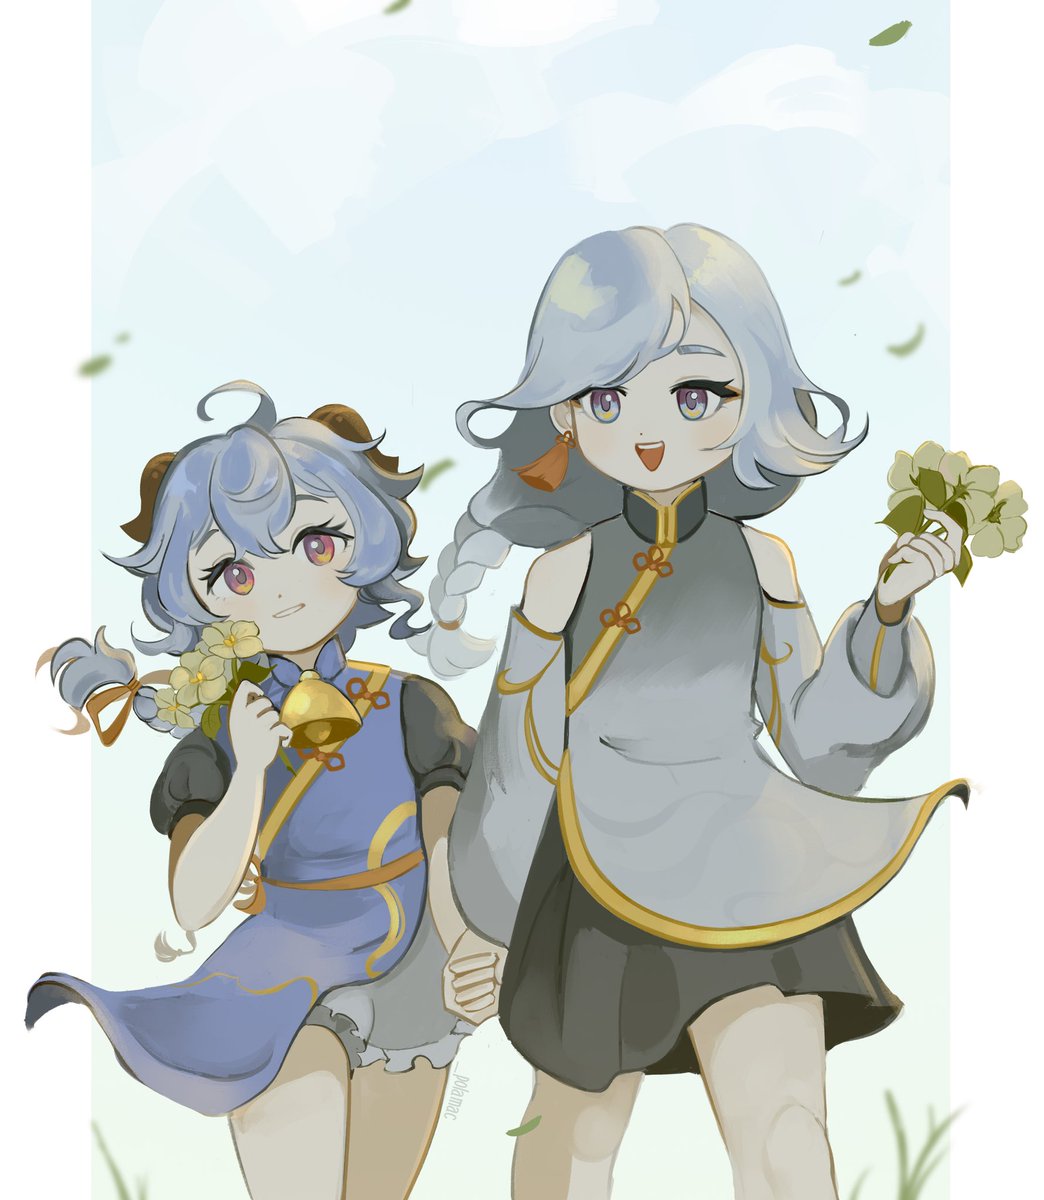 ganyu (genshin impact) ,shenhe (genshin impact) multiple girls 2girls holding hands horns flower bell smile  illustration images